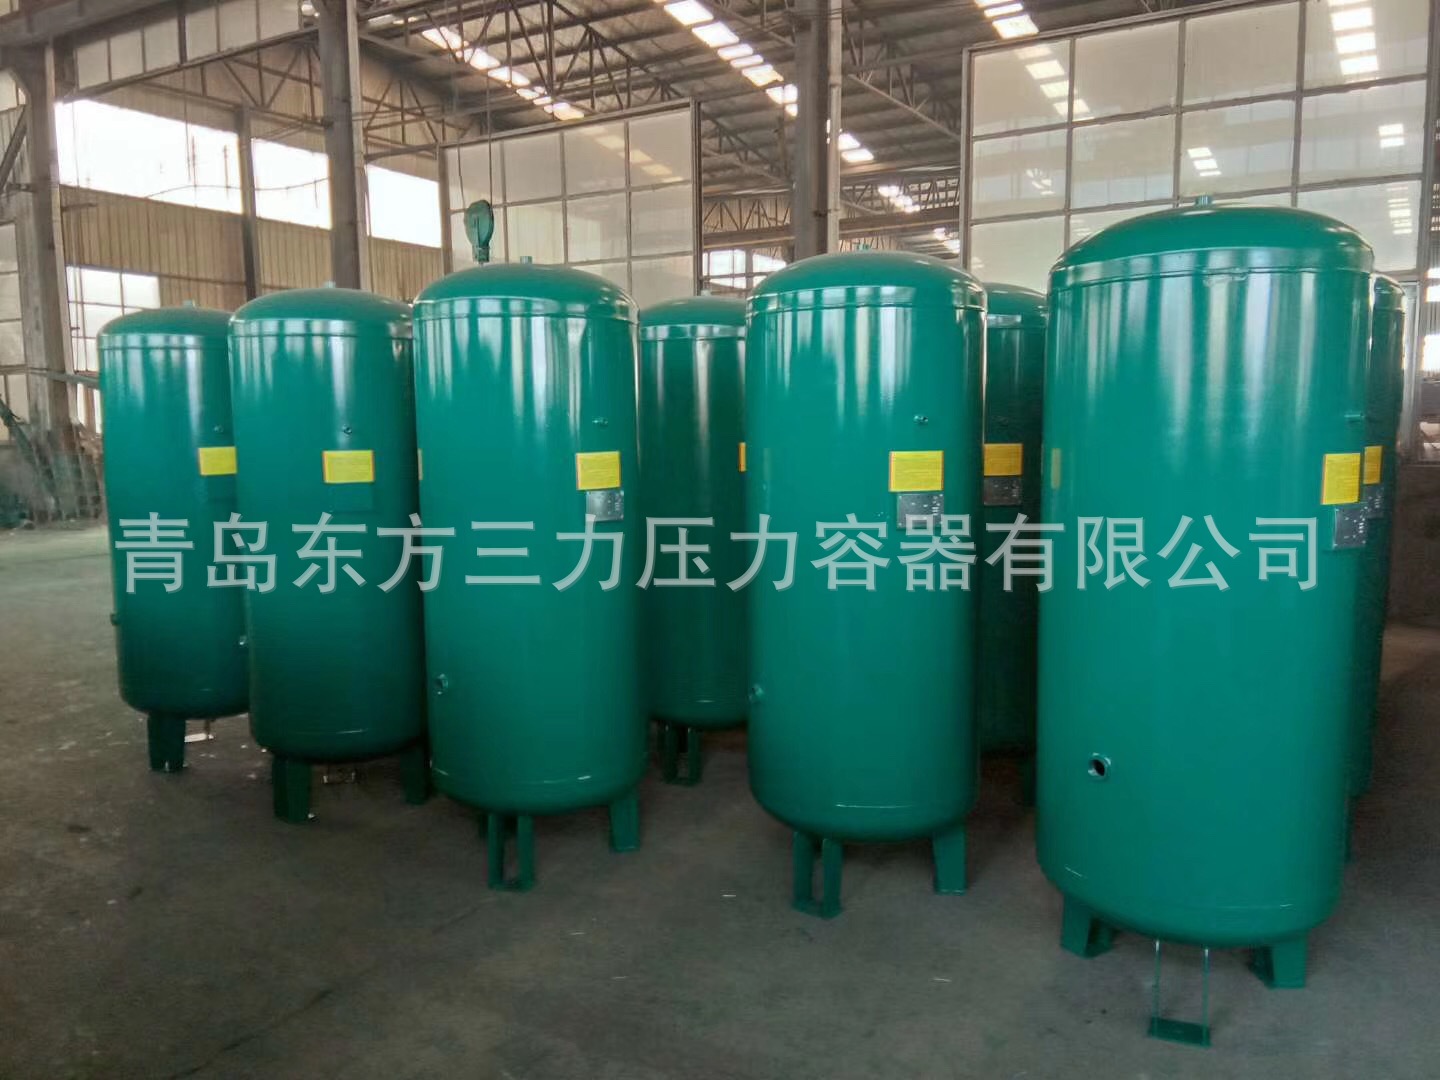 压力容器制造公司直销 储气罐6立方米 10kg压缩空气储罐氧气储罐示例图10